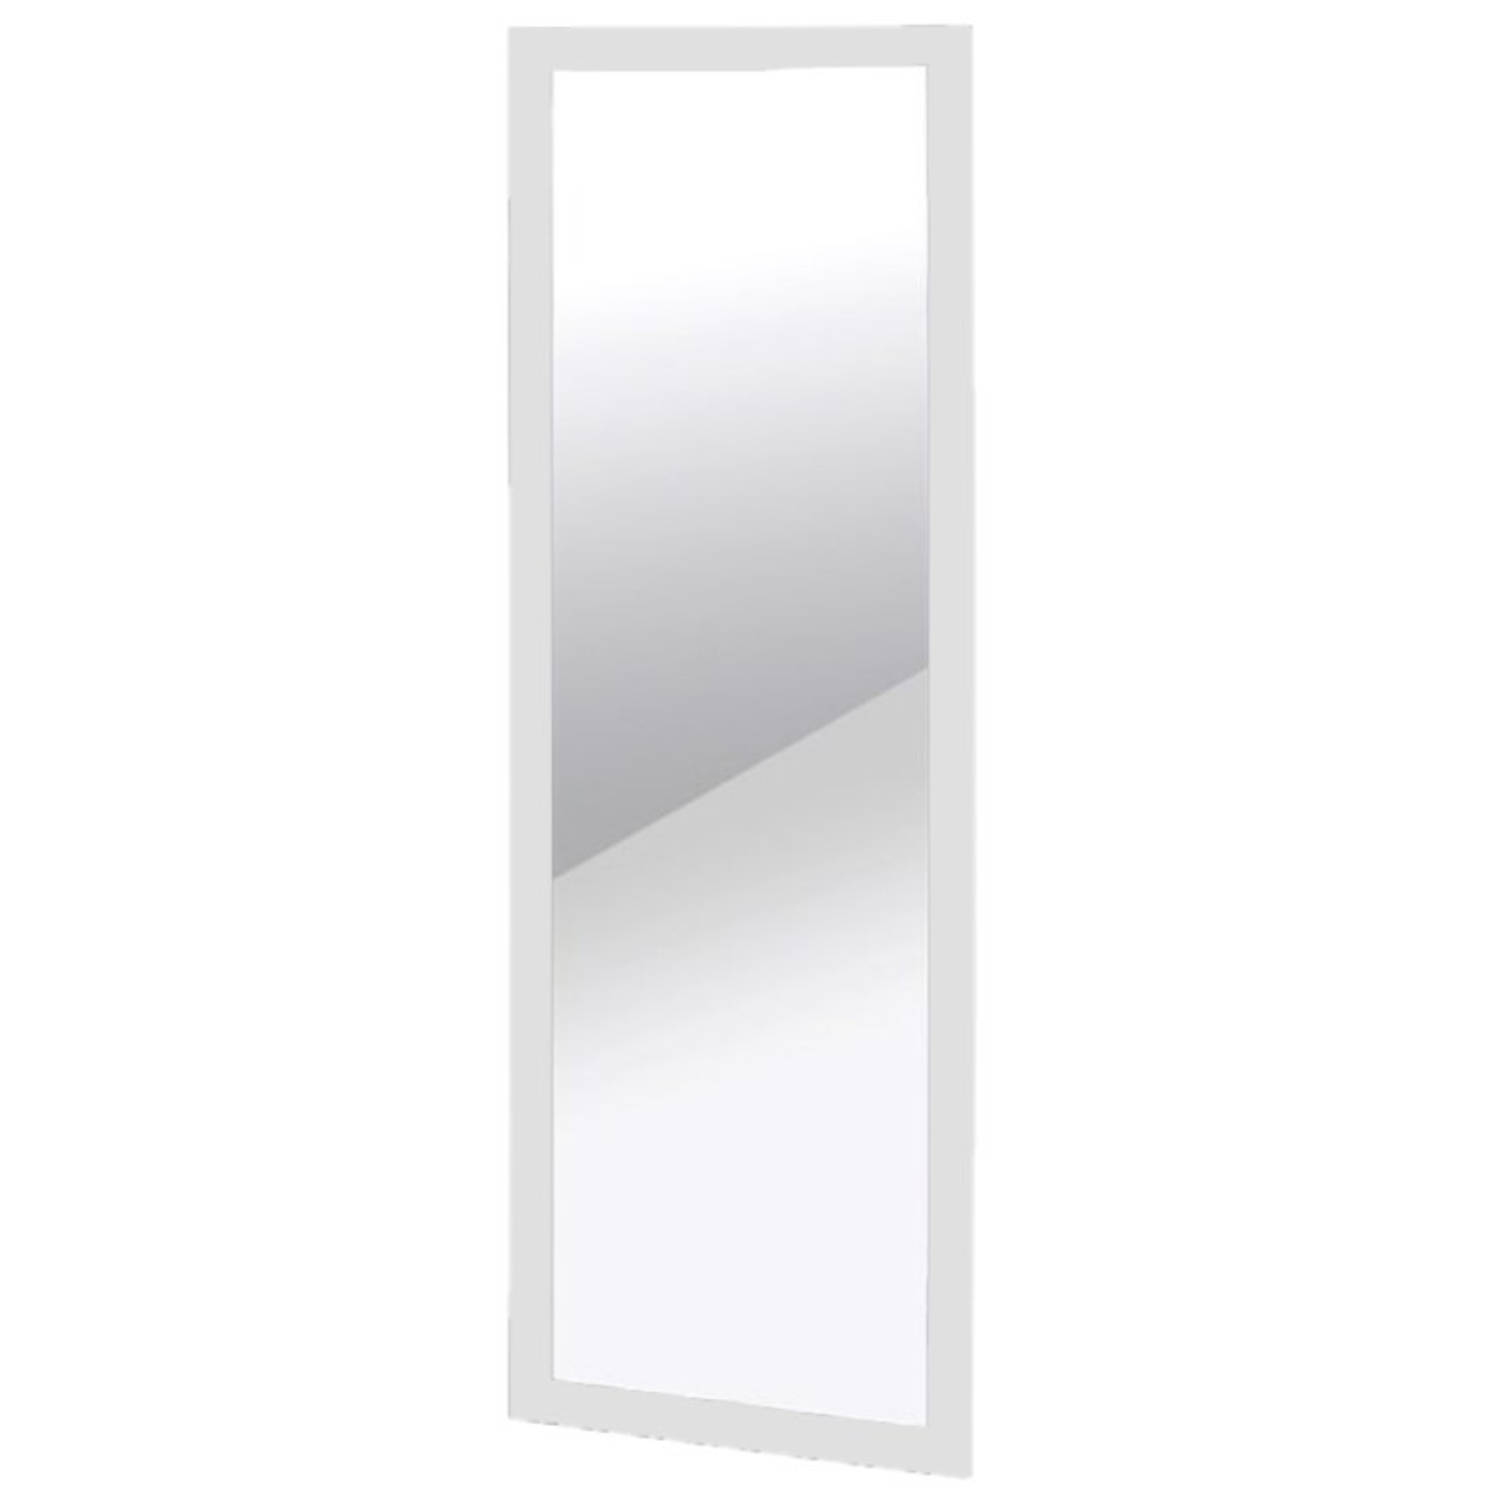 Beschikbaar Verenigen Plakken Wandspiegel/passpiegel rechthoekig met houten frame wit 35 x 94,5 cm -  Spiegels | Blokker